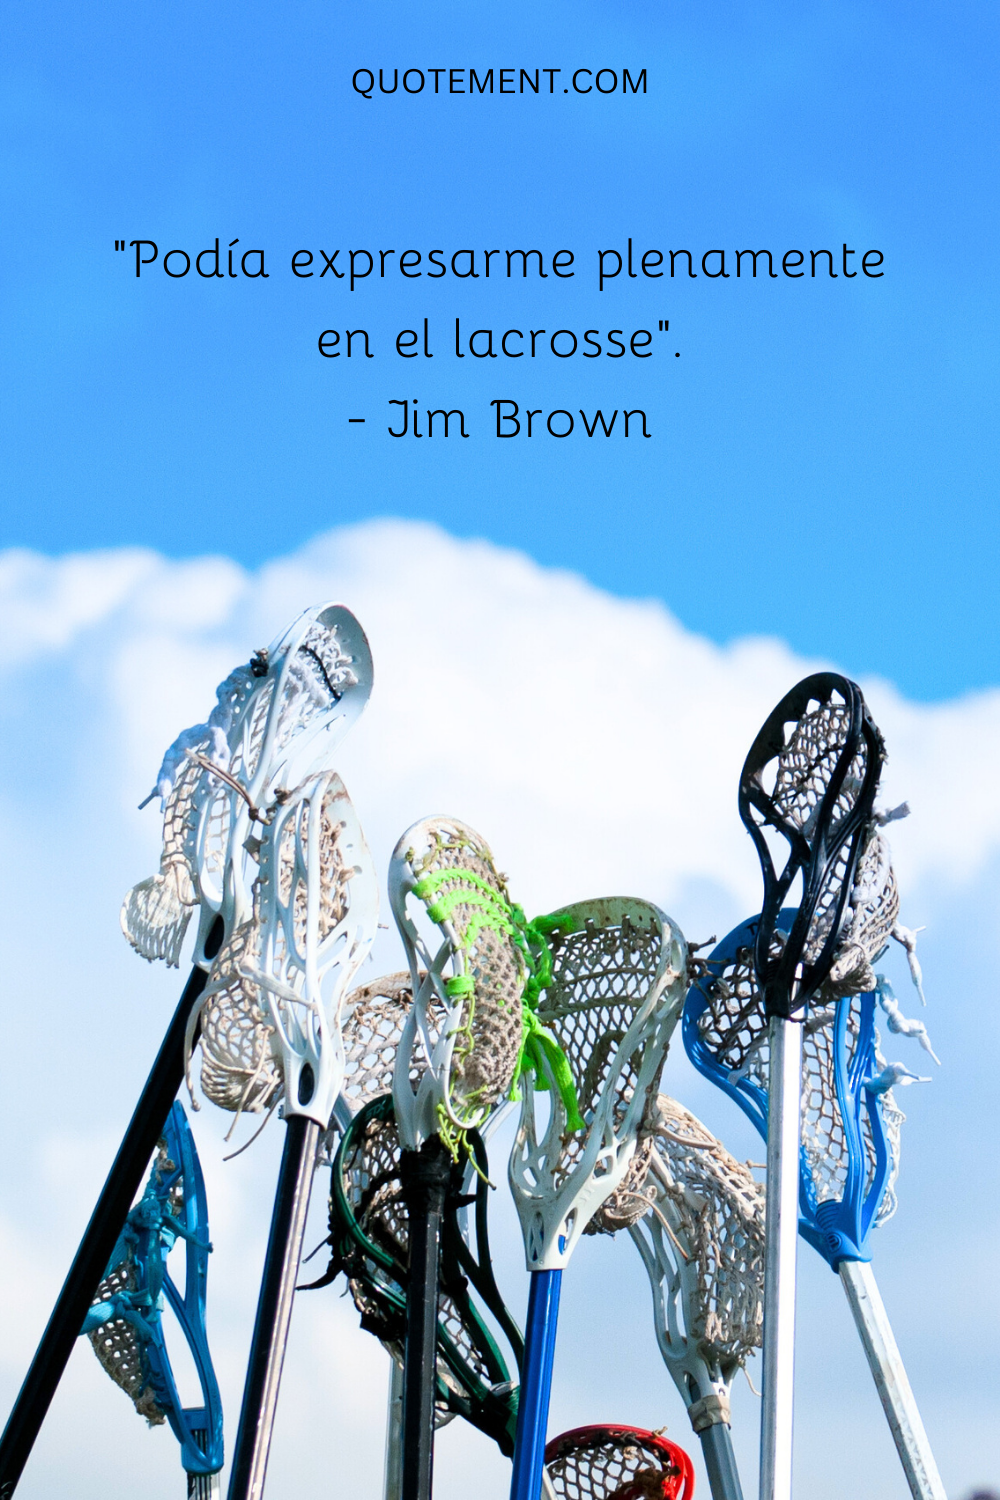 "Podía expresarme plenamente en el lacrosse". - Jim Brown